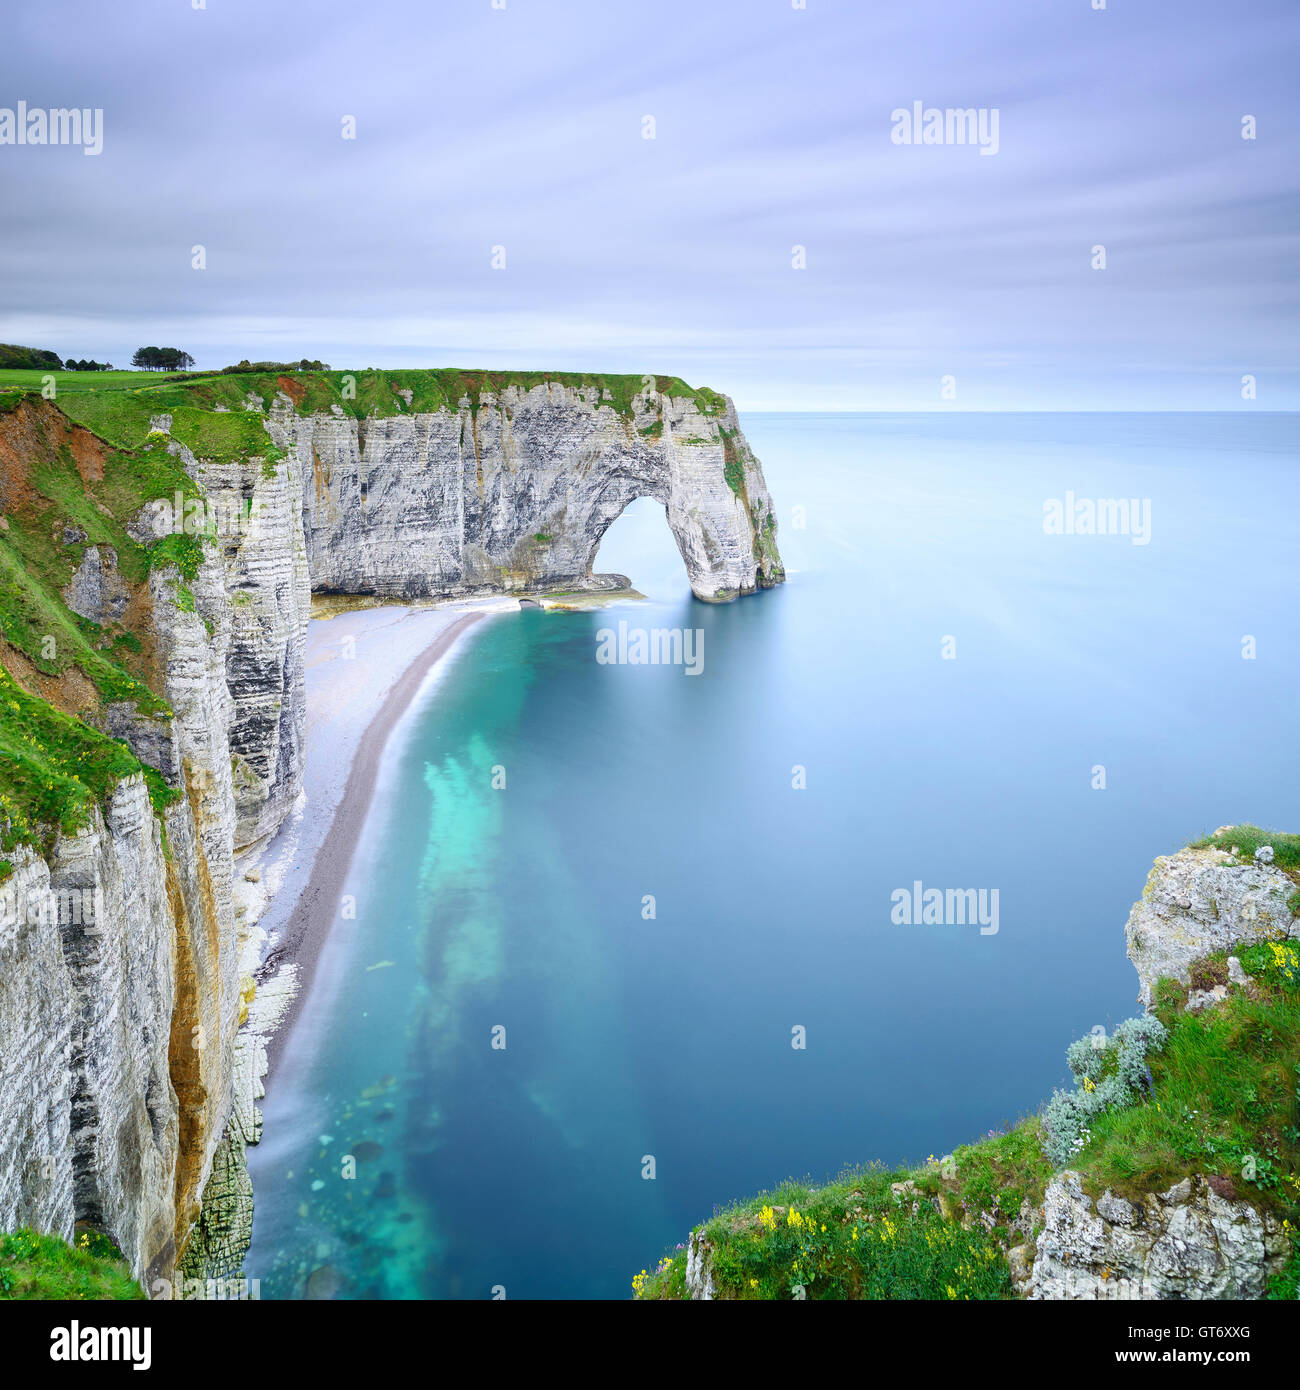 Etretat, la Manneporte roccia naturale arch meraviglia, Cliff e spiaggia. Fotografie con lunghi tempi di esposizione. La Normandia, Francia. Foto Stock